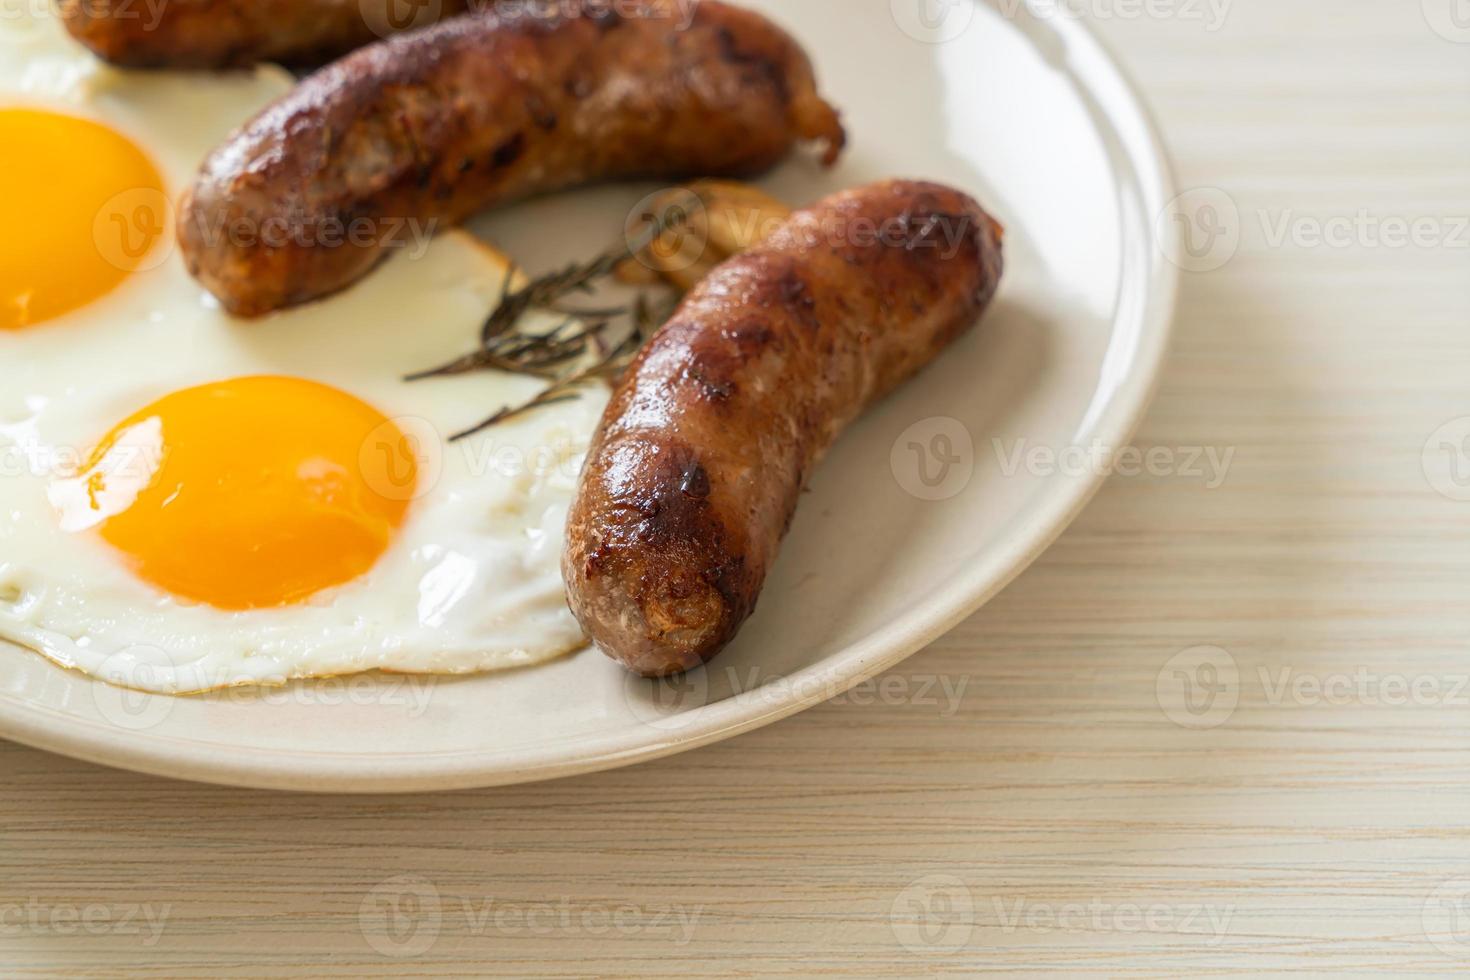 ovo frito duplo caseiro com linguiça de porco frita - no café da manhã foto